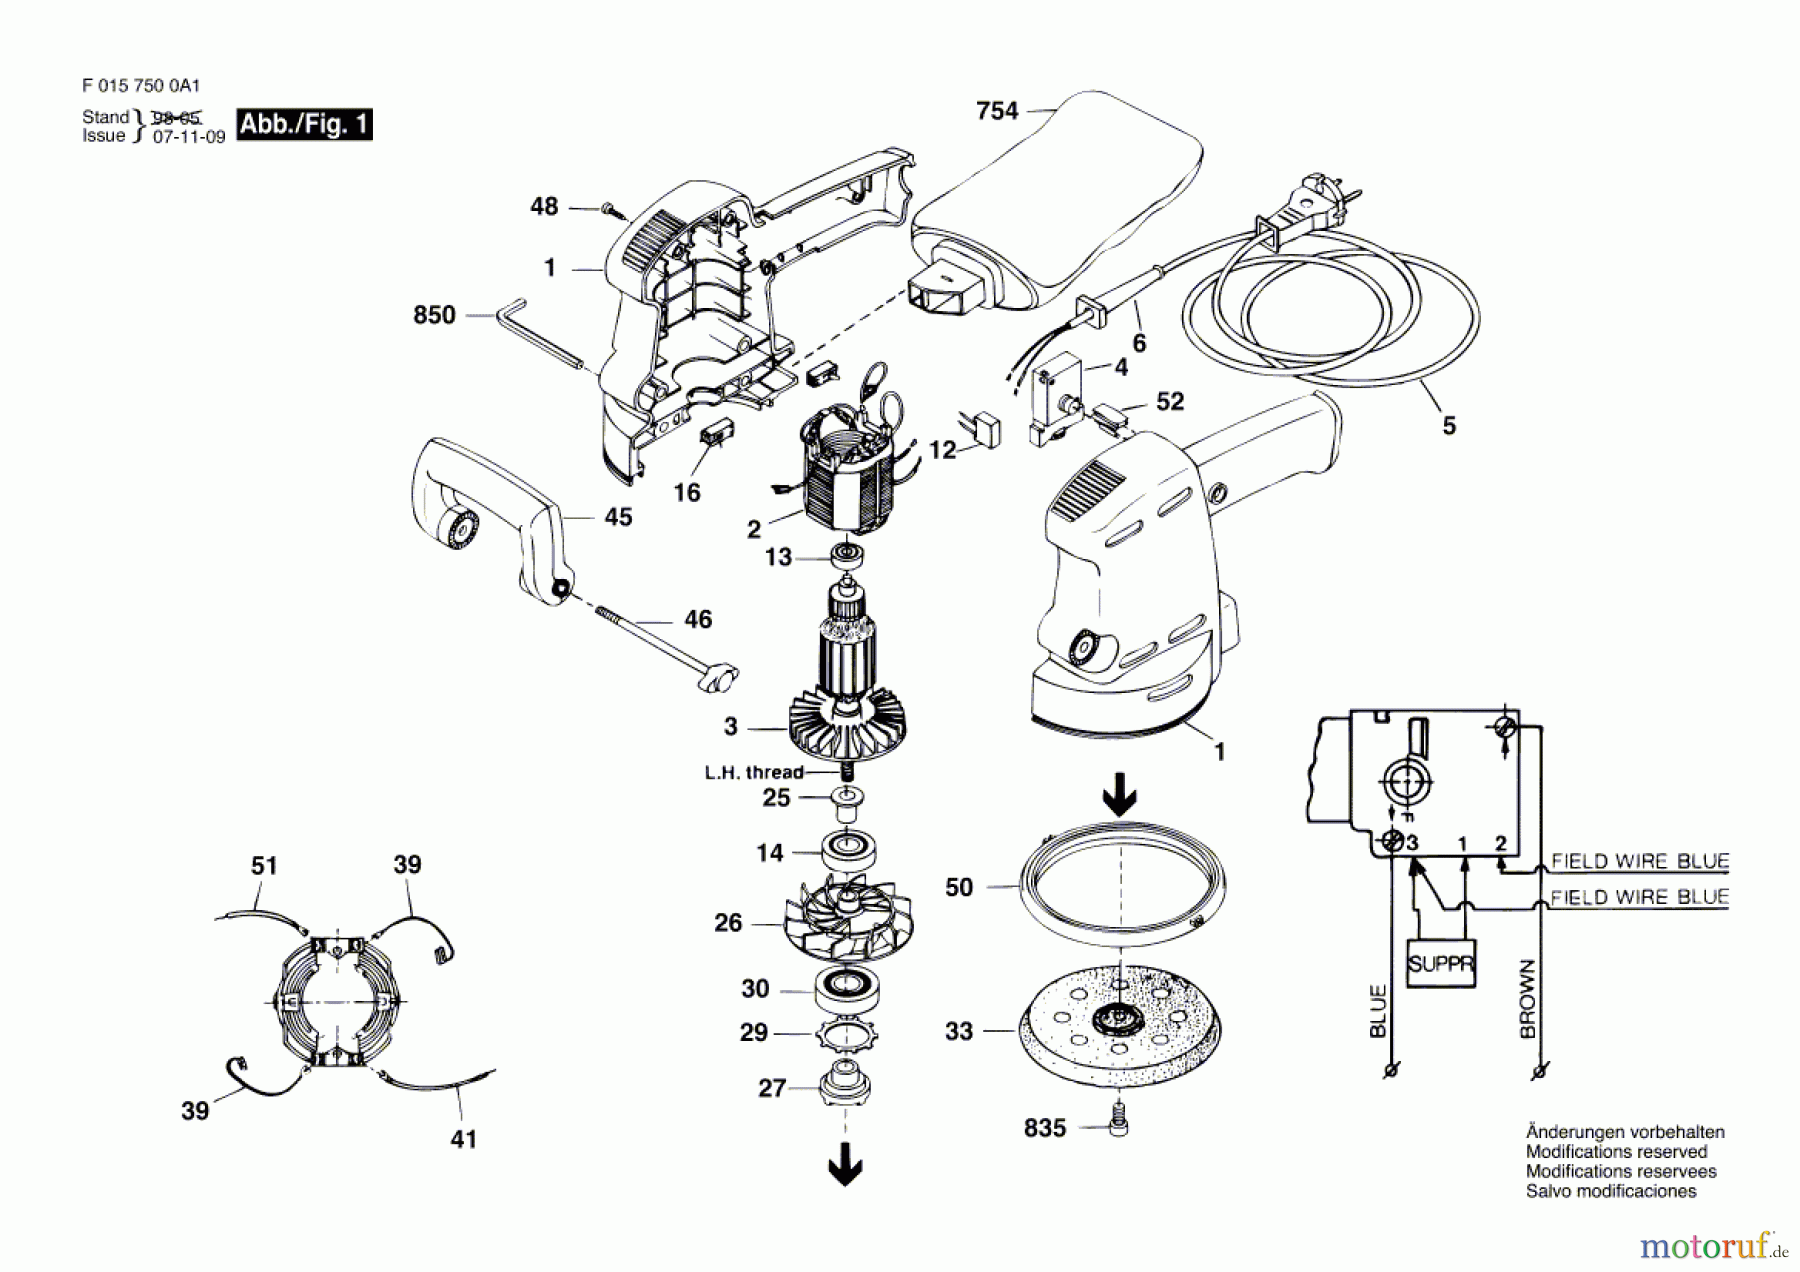  Bosch Werkzeug Exzenterschleifer 7500 H1 Seite 1